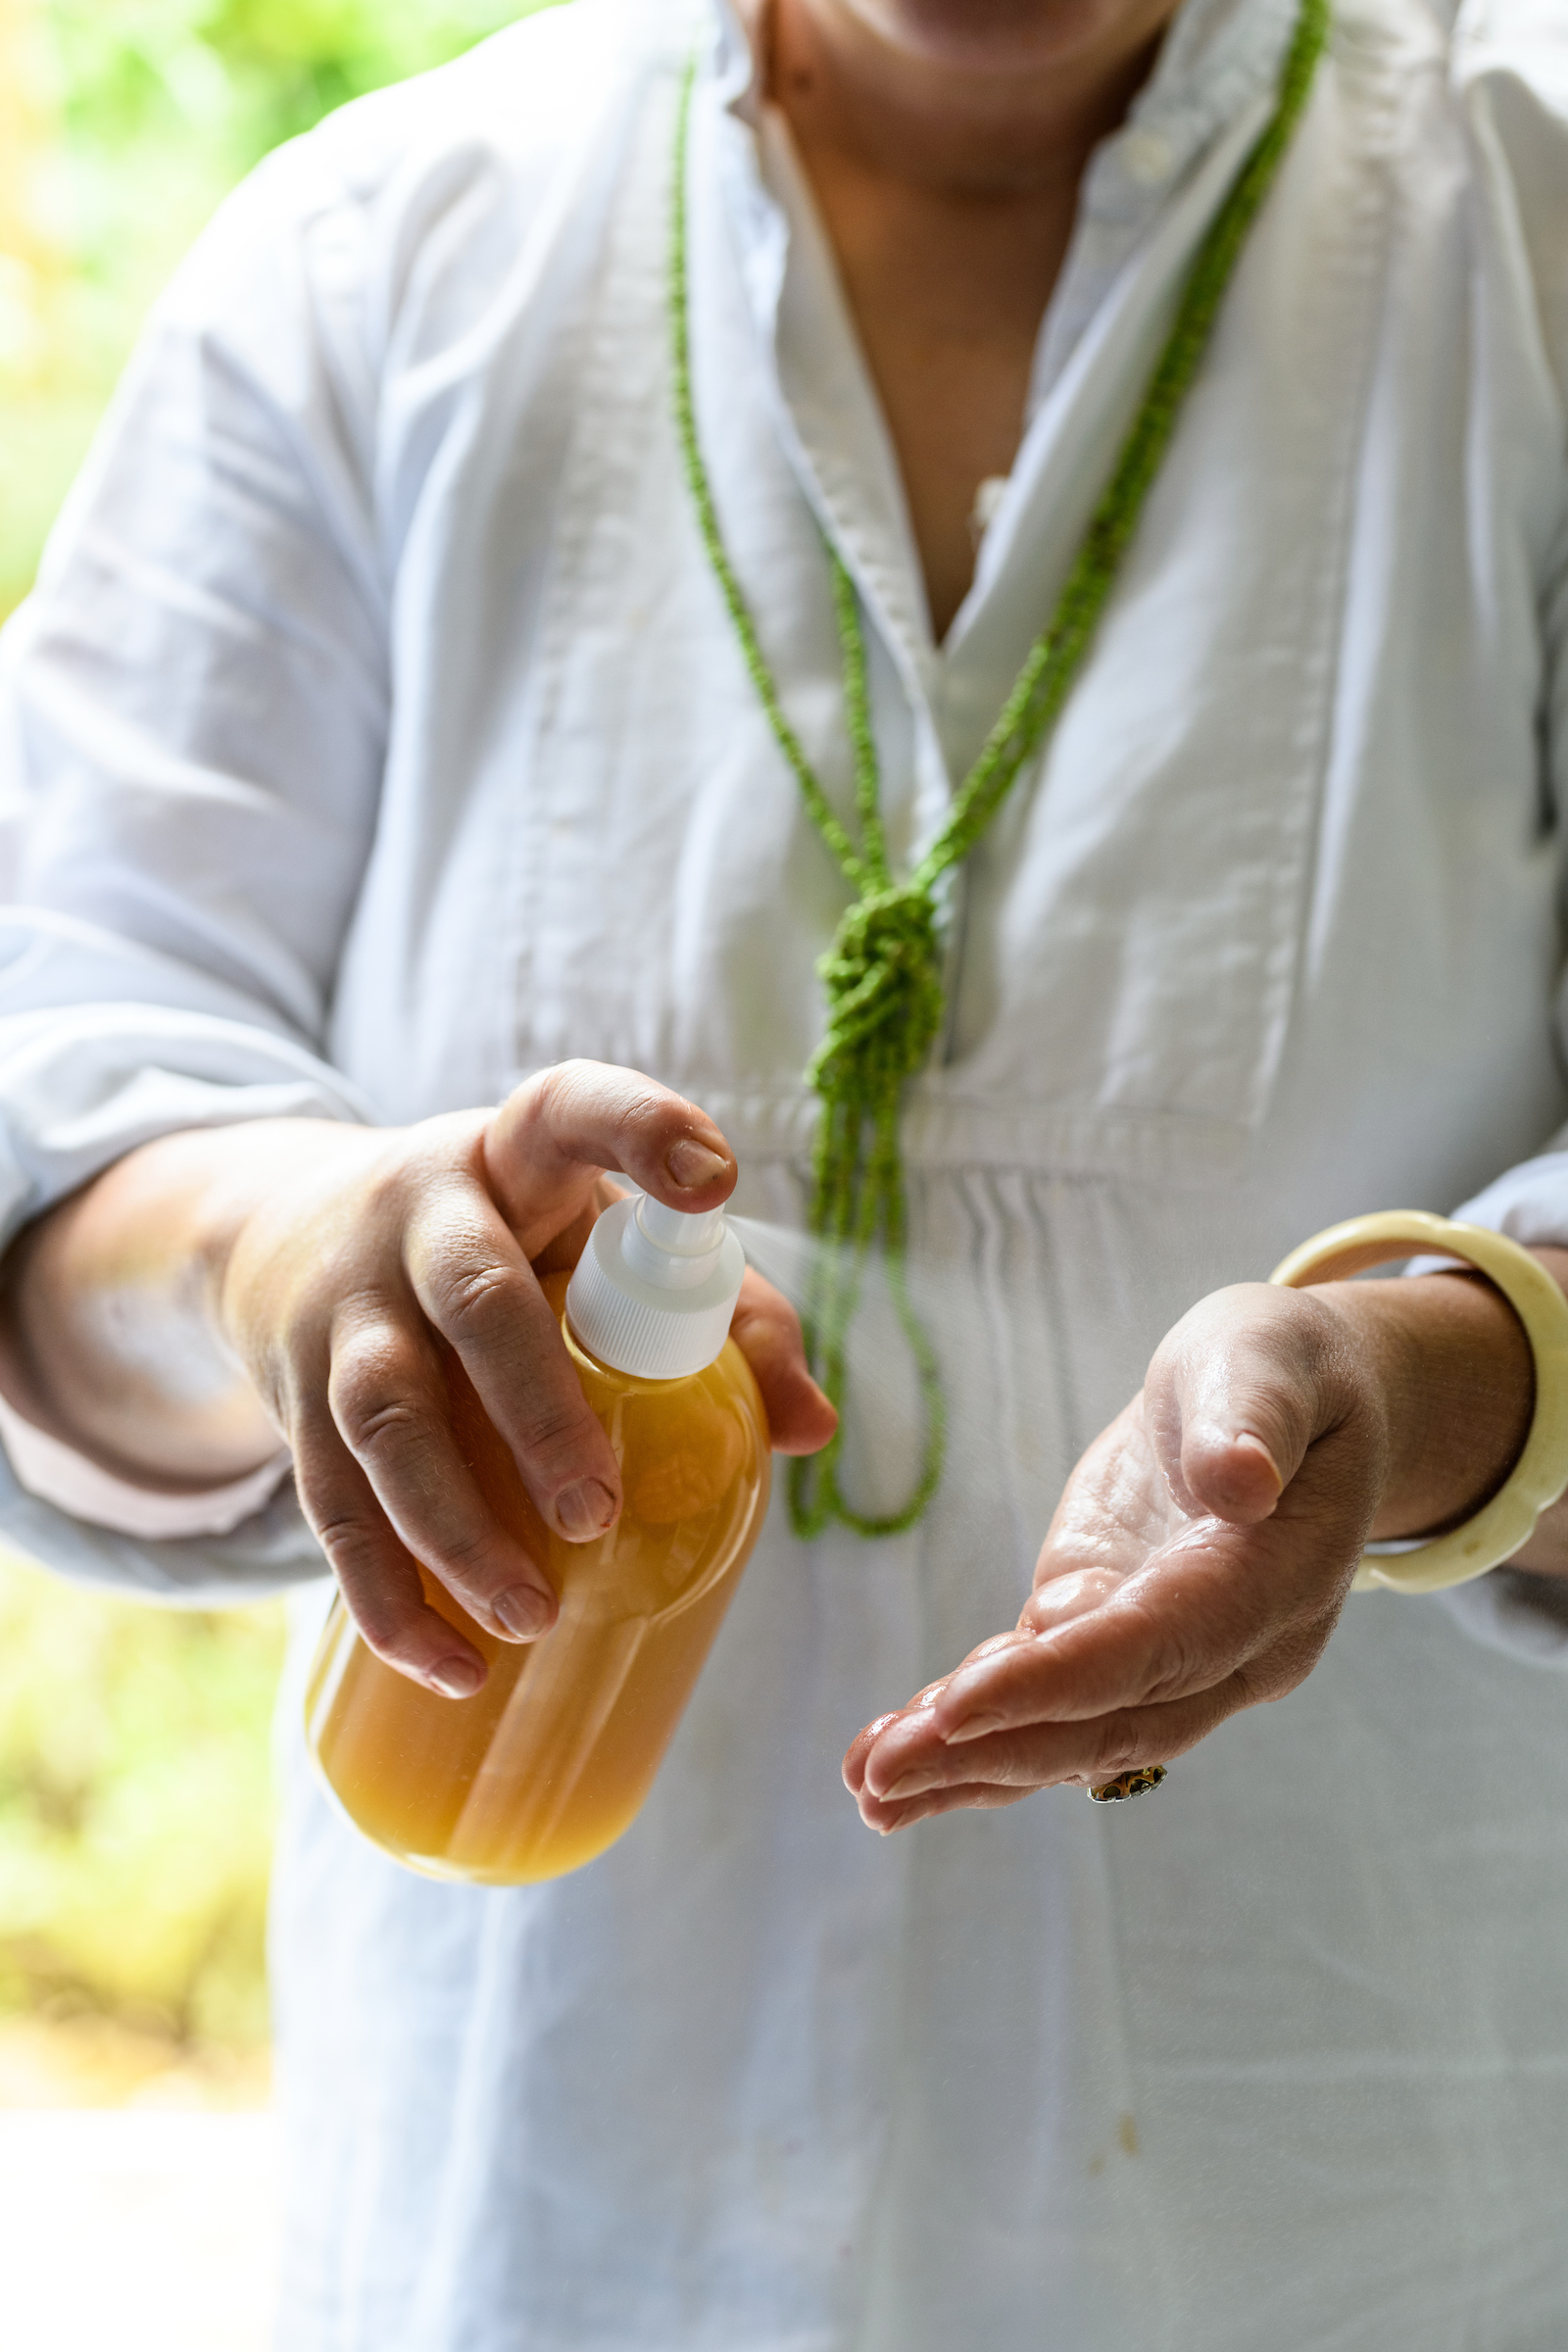 Natural skincare company owner Silvana de Soissons spraying Lemon Balm, lime and thyme flower hand sanitiser spray